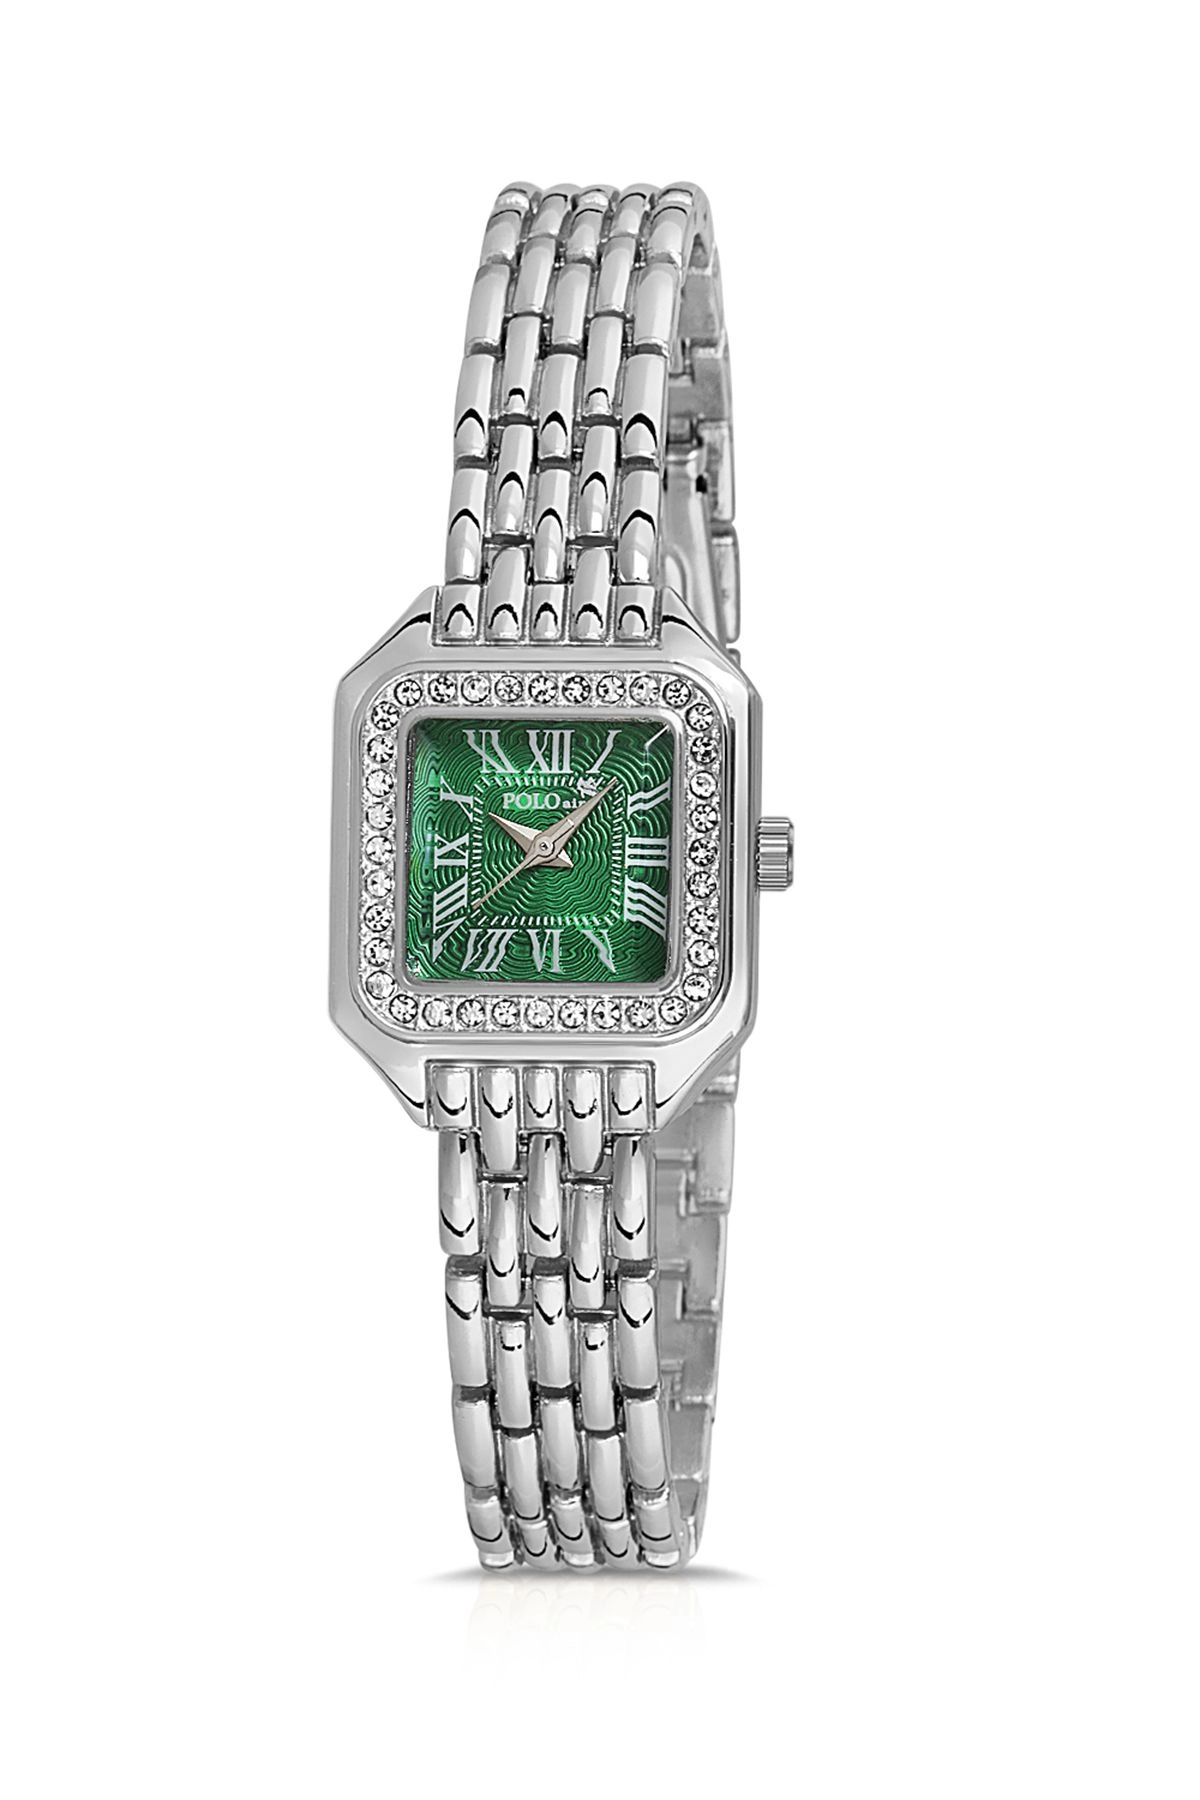 Romen Rakamlı Vintage Kadın Kol Saati Gümüş-İçi Yeşil Pl-1475B4X İki Renk Pl-1475B4X